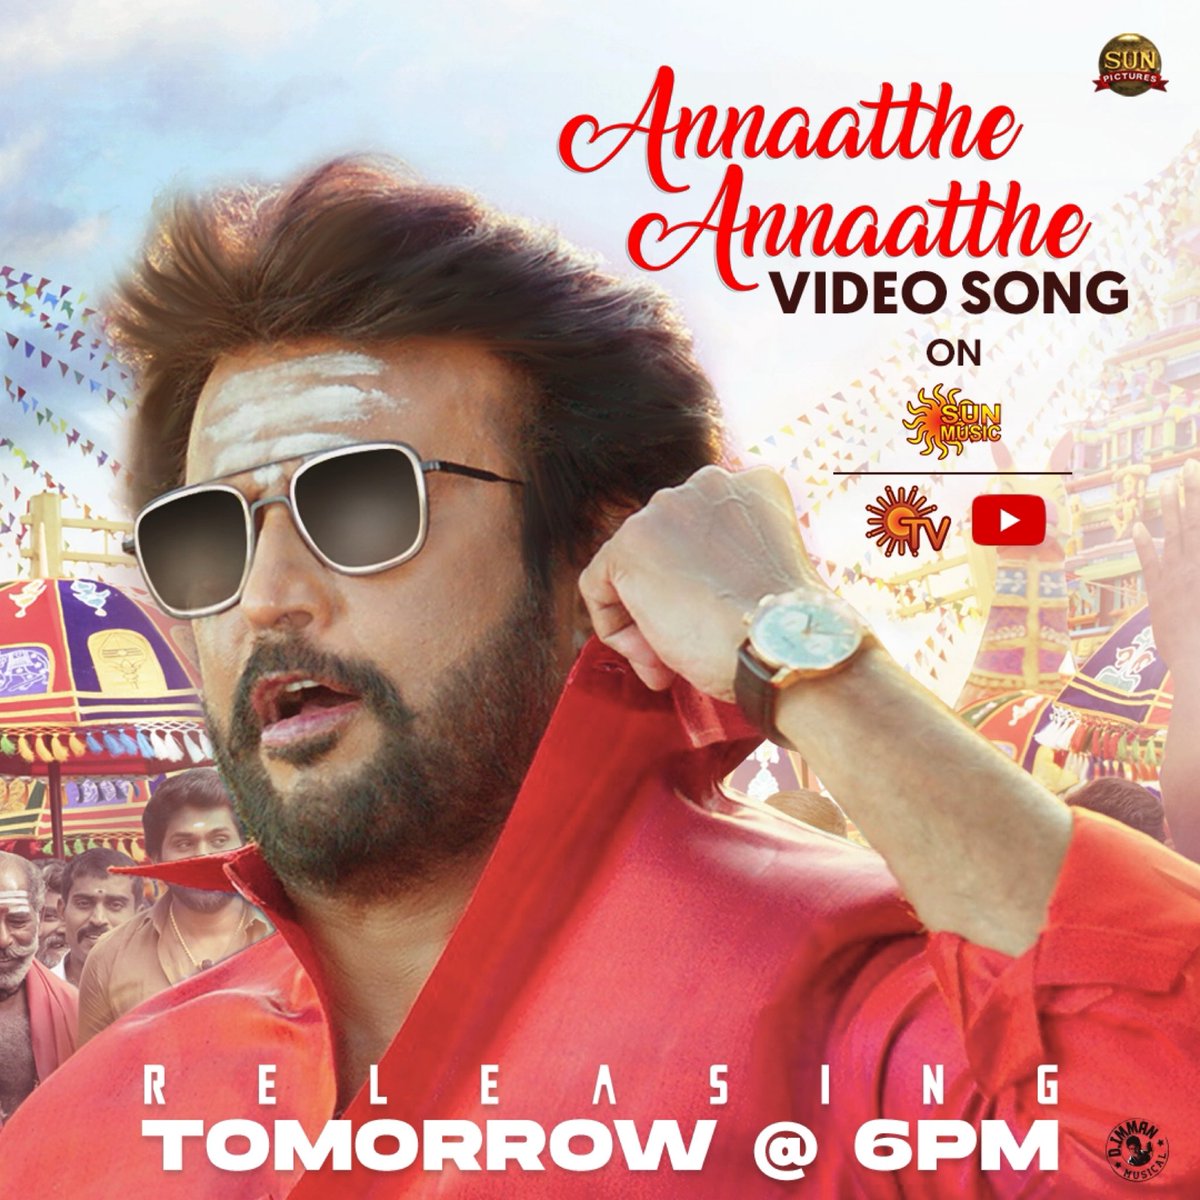 #AnnaattheAnnaatthe Video song  from tomorrow! 6pm! On SunTv and YouTube!
#DImmanMusical
Praise God!

@directorsiva @sunpictures @rajinikanth